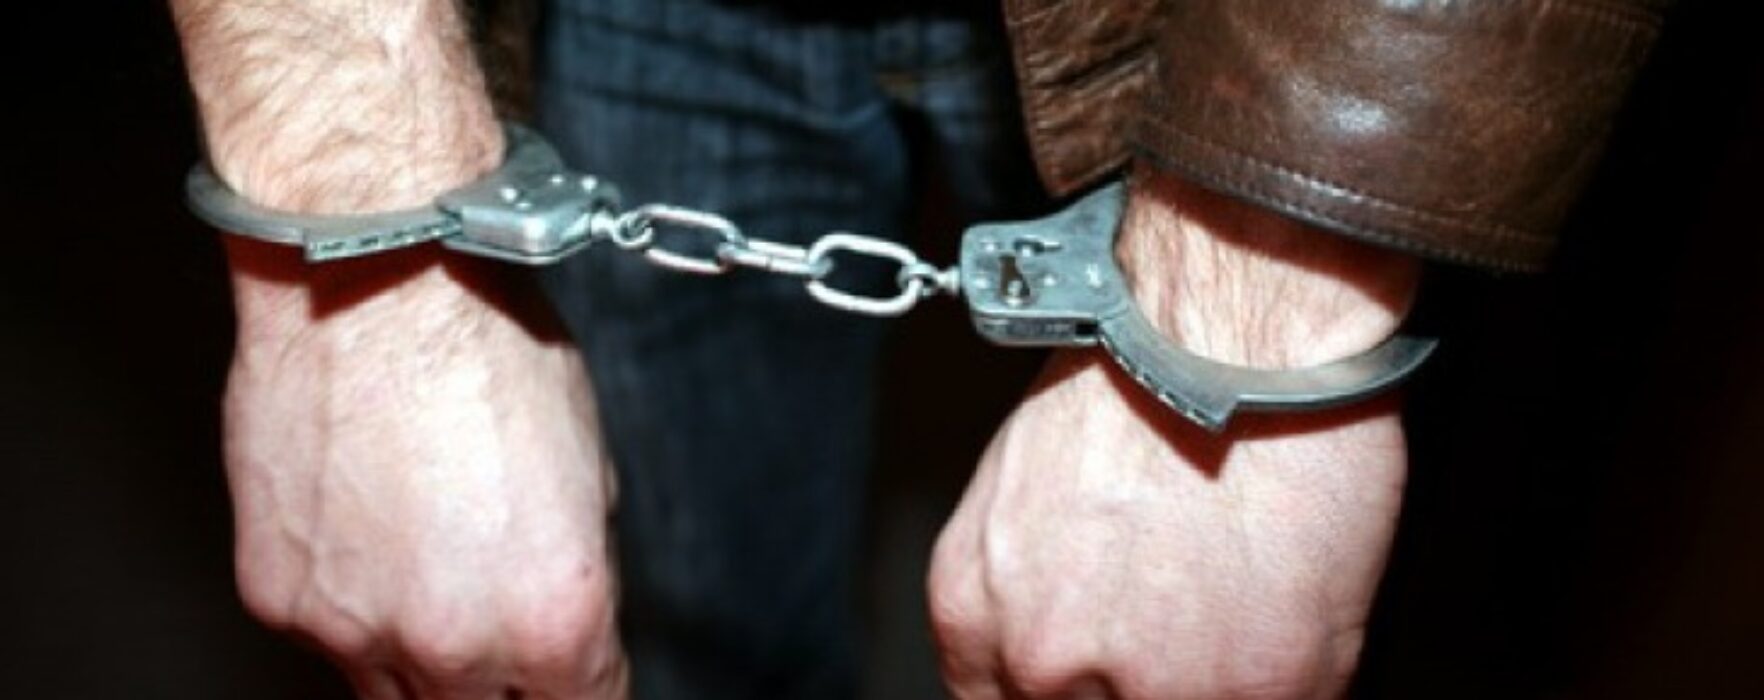 Dâmboviţa: Bărbat de 62 de ani, reţinut pentru că a violat o fetiţă de 7 ani